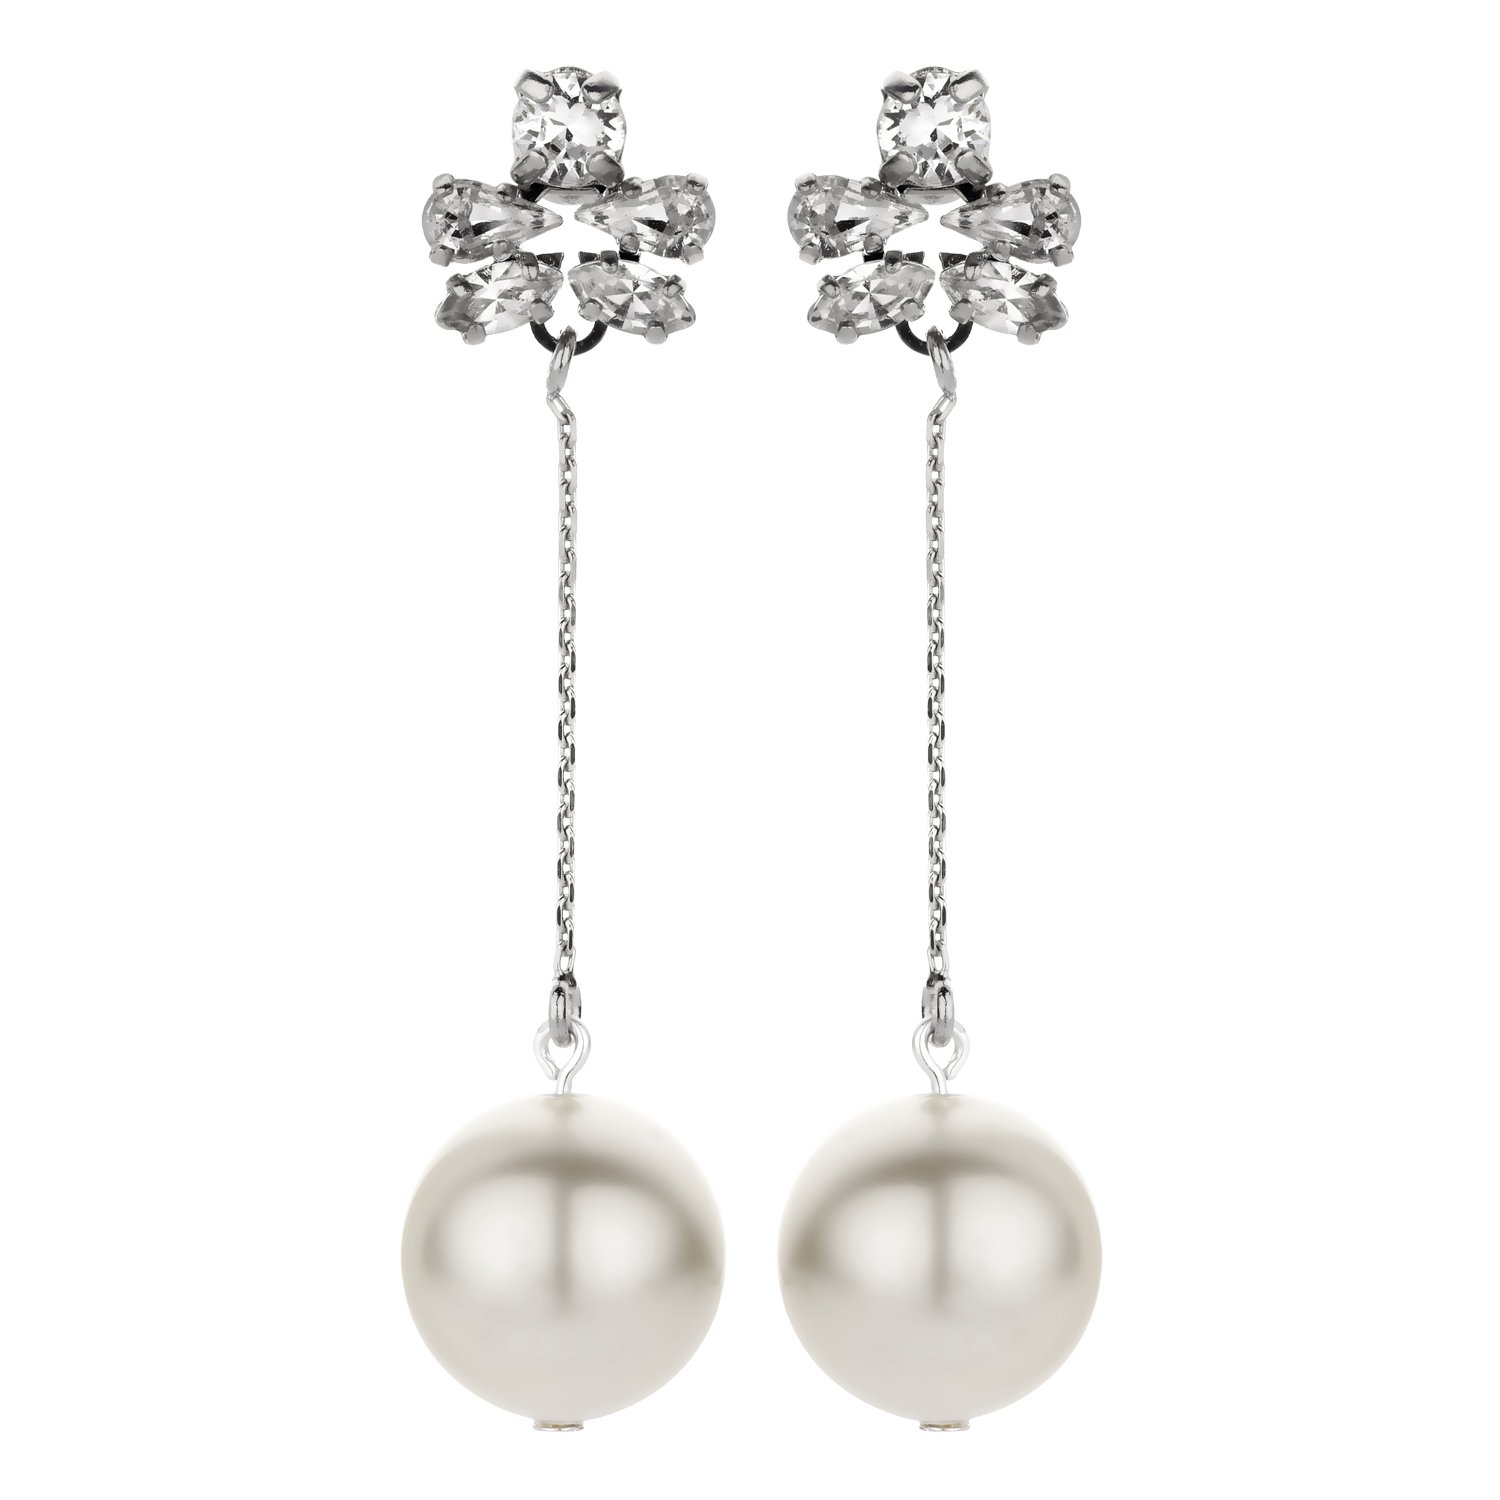 Bridal earring pendant in silver - Souvenirs de Pomme